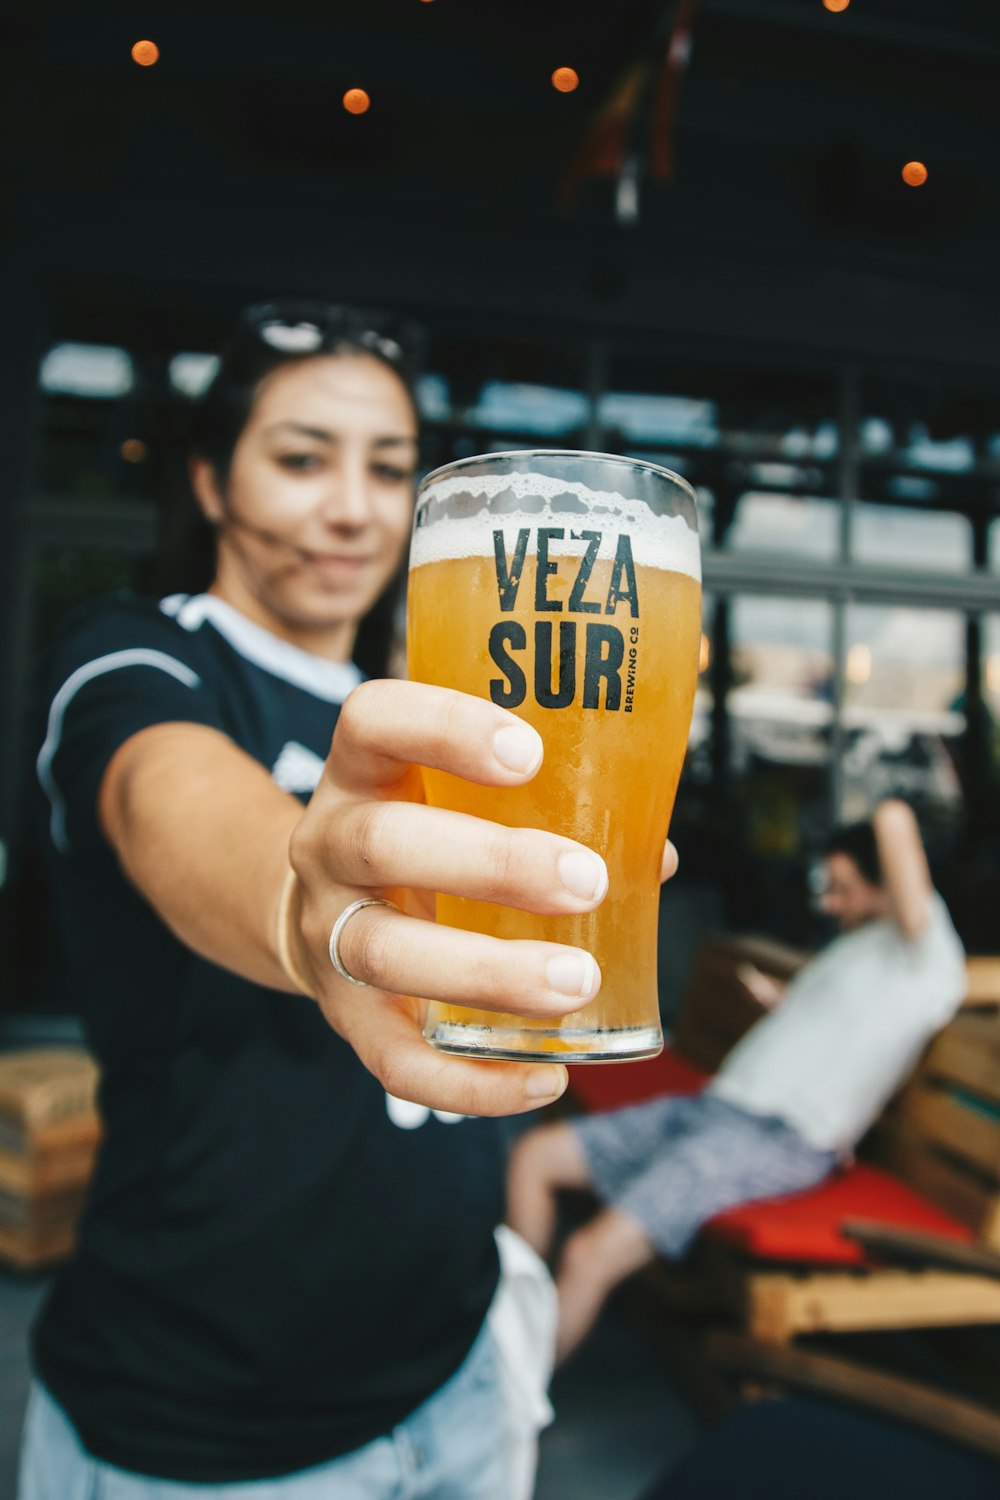 Frau mit Veza Sur Trinkglasbecher gefüllt mit Bier